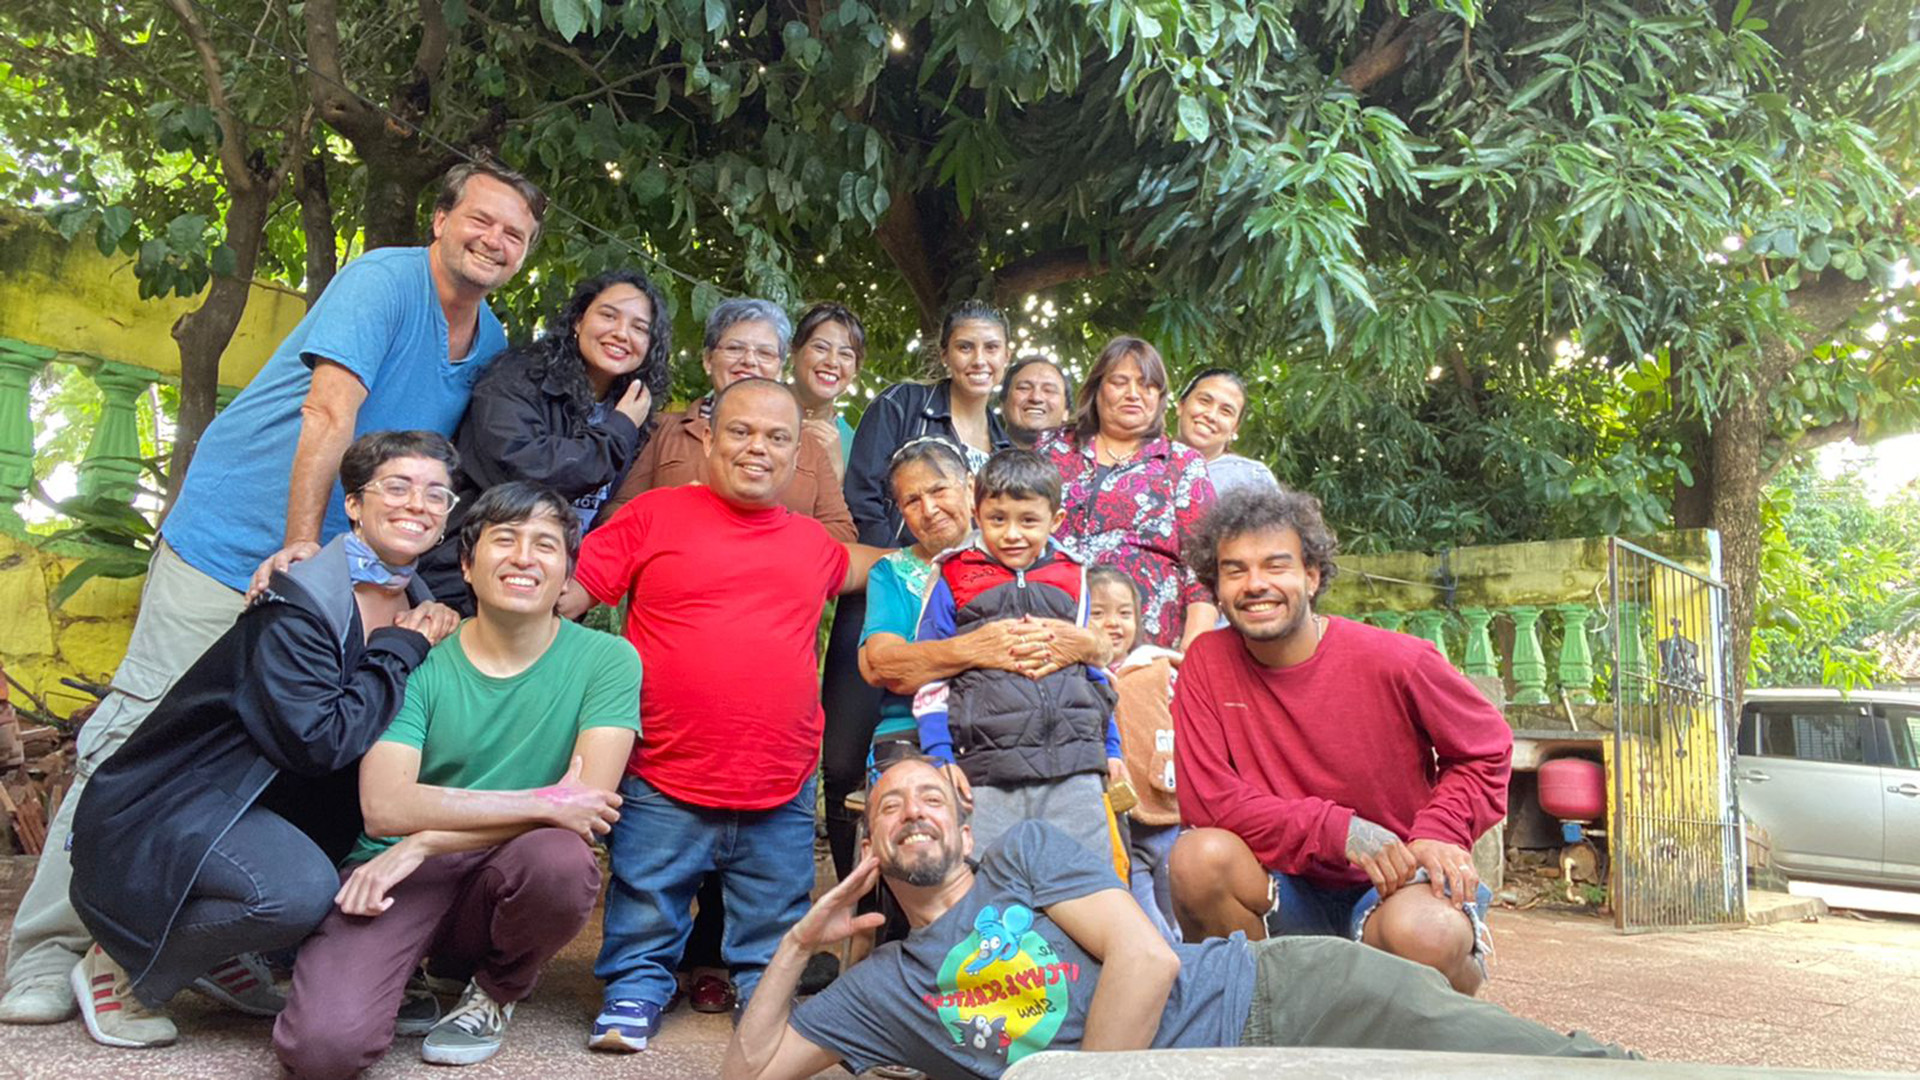 El equipo de rodaje en Paraguay, junto a Julio César Amarilla, apodado "Mortero Bala", el referente local